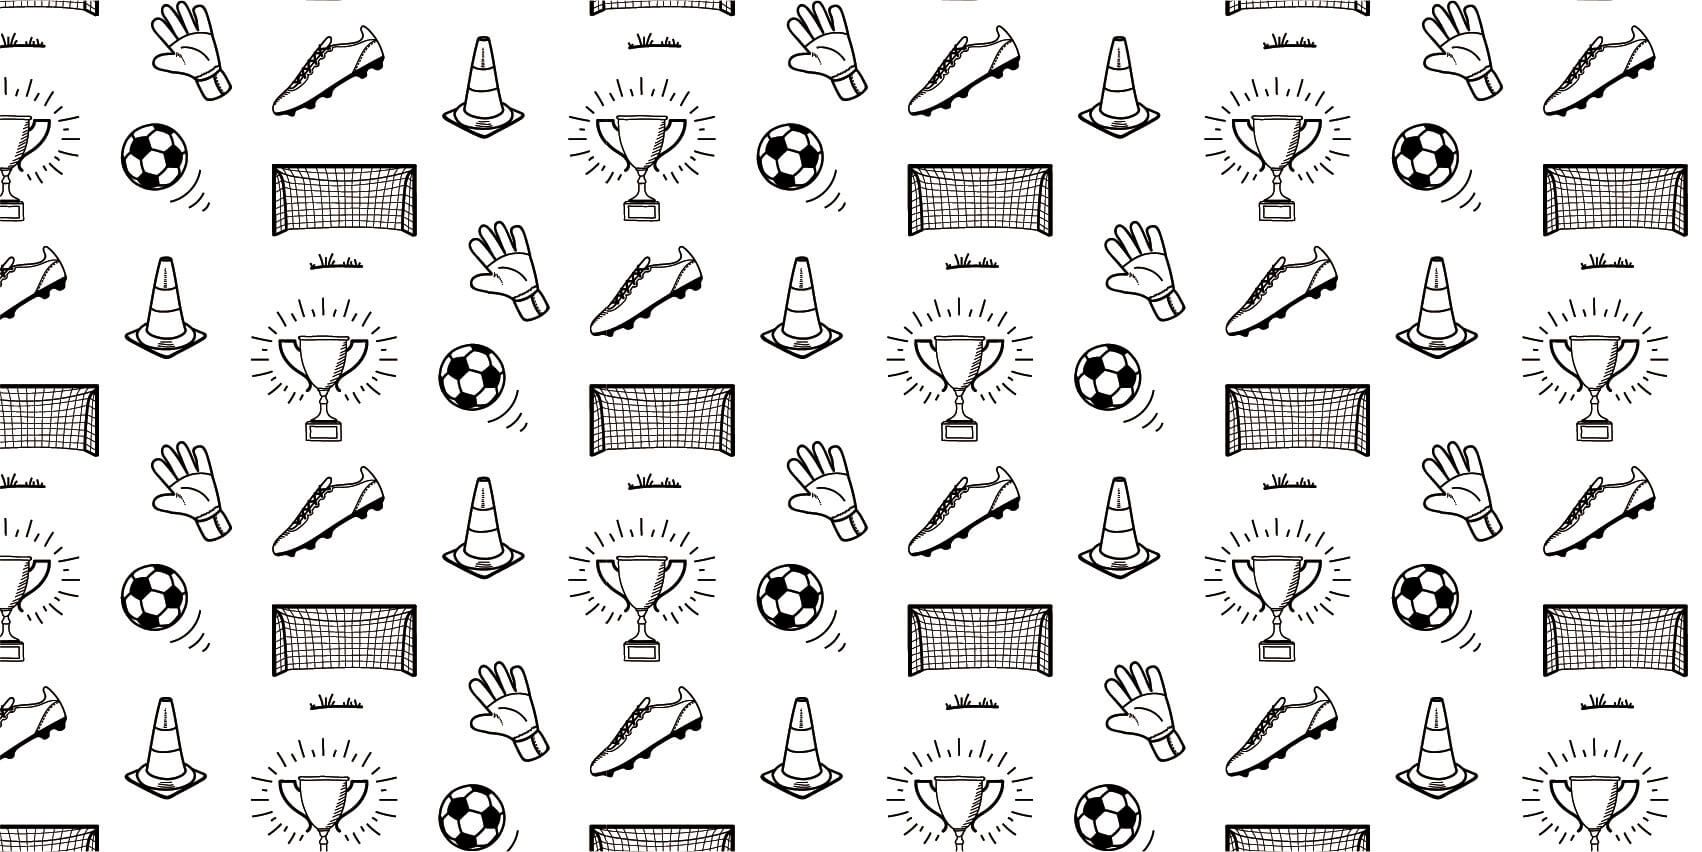 Soccer wallpaper - Soccer Pattern - Children's room